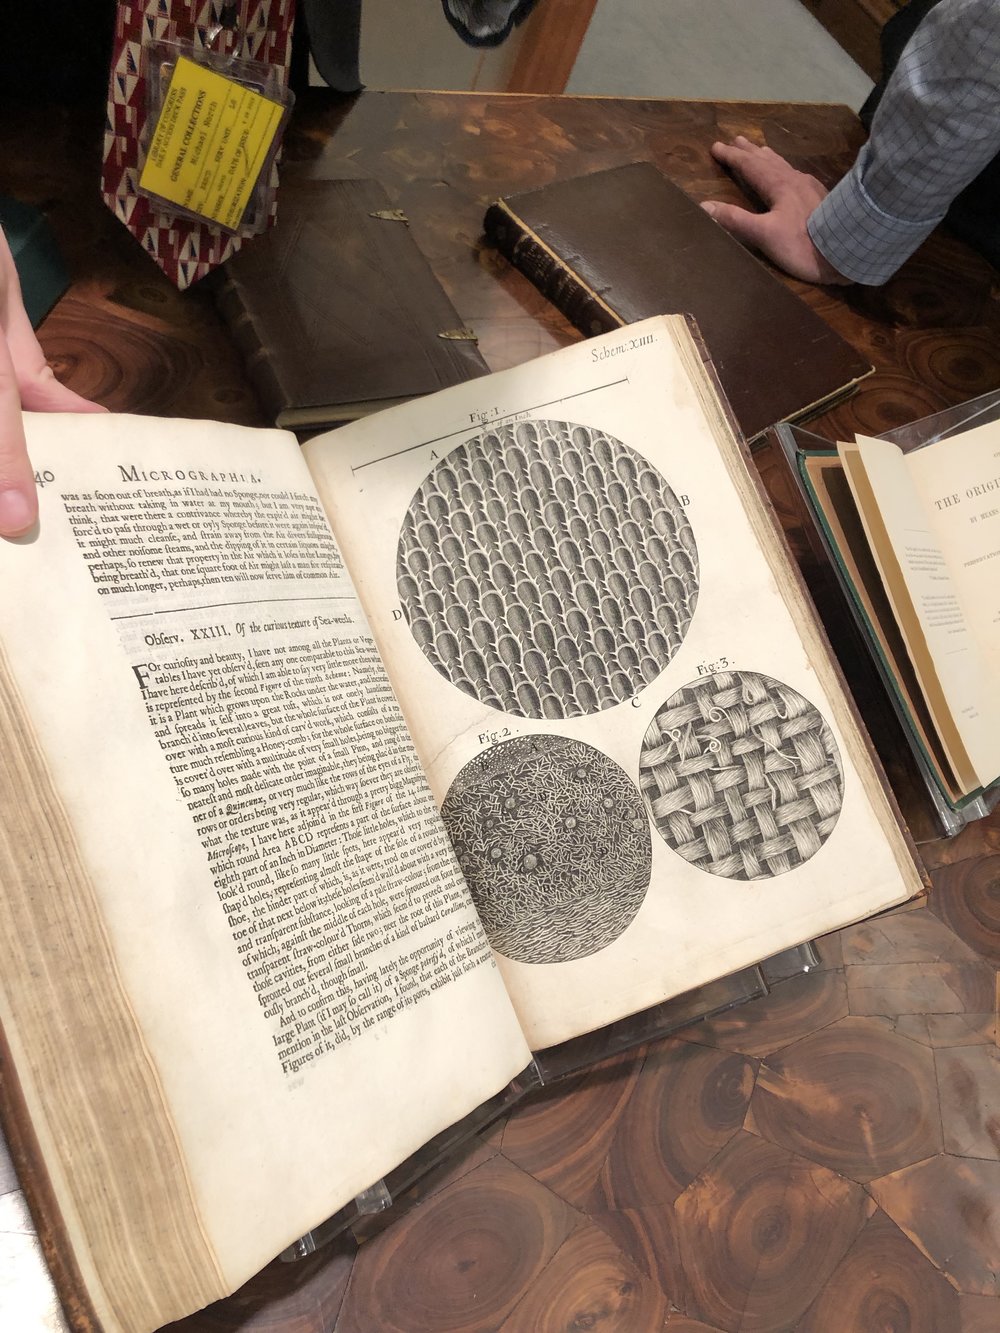 Robert Hooke's Micrographia